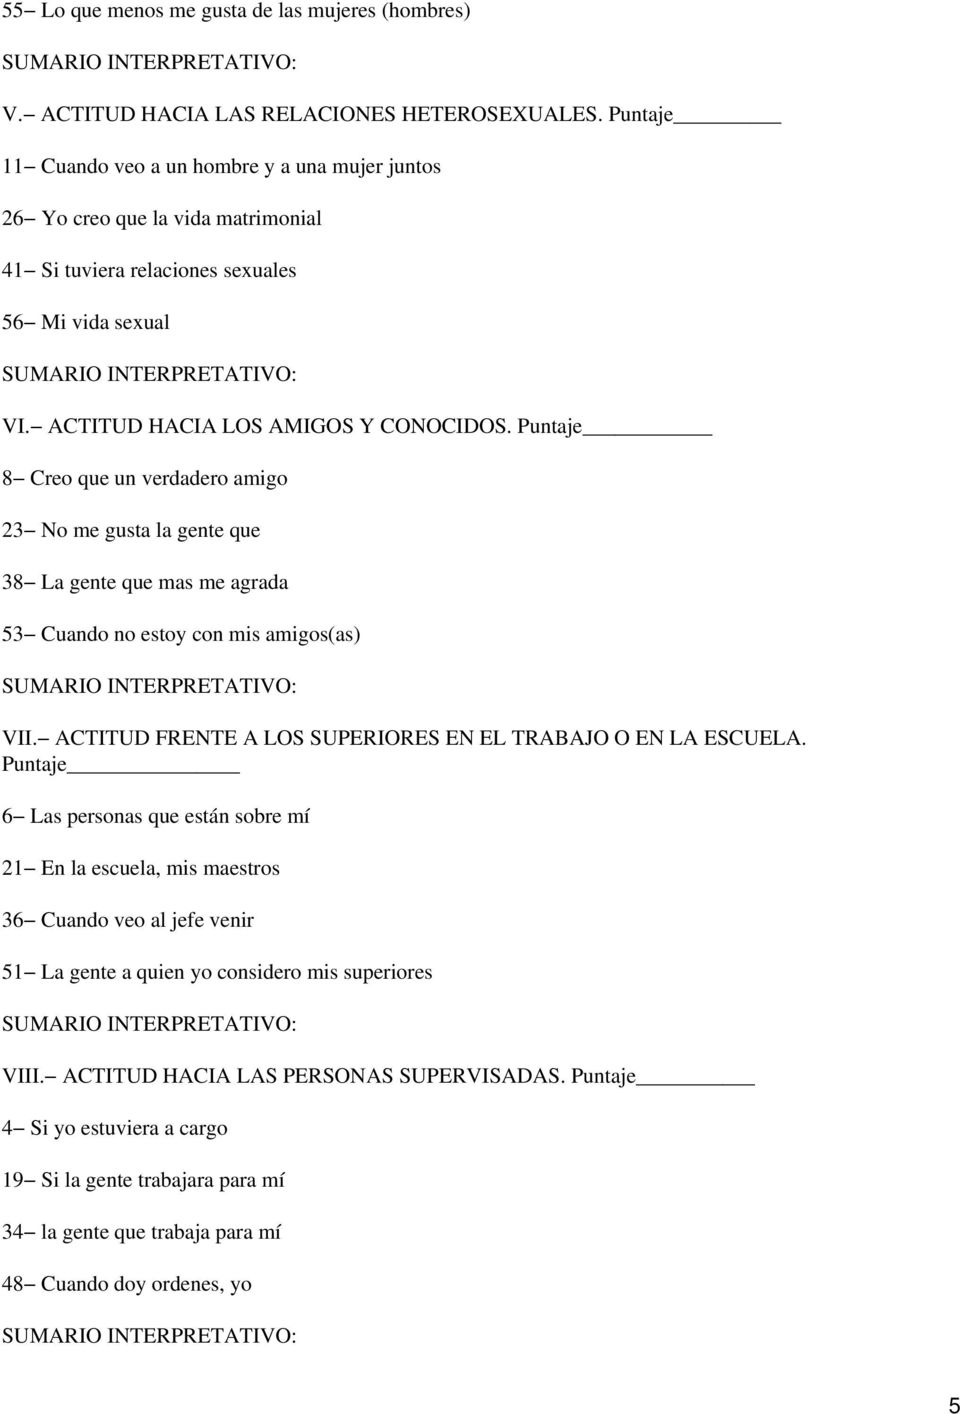 TEST DE FRASES INCOMPLETAS DE SACKS. - PDF Descargar libre